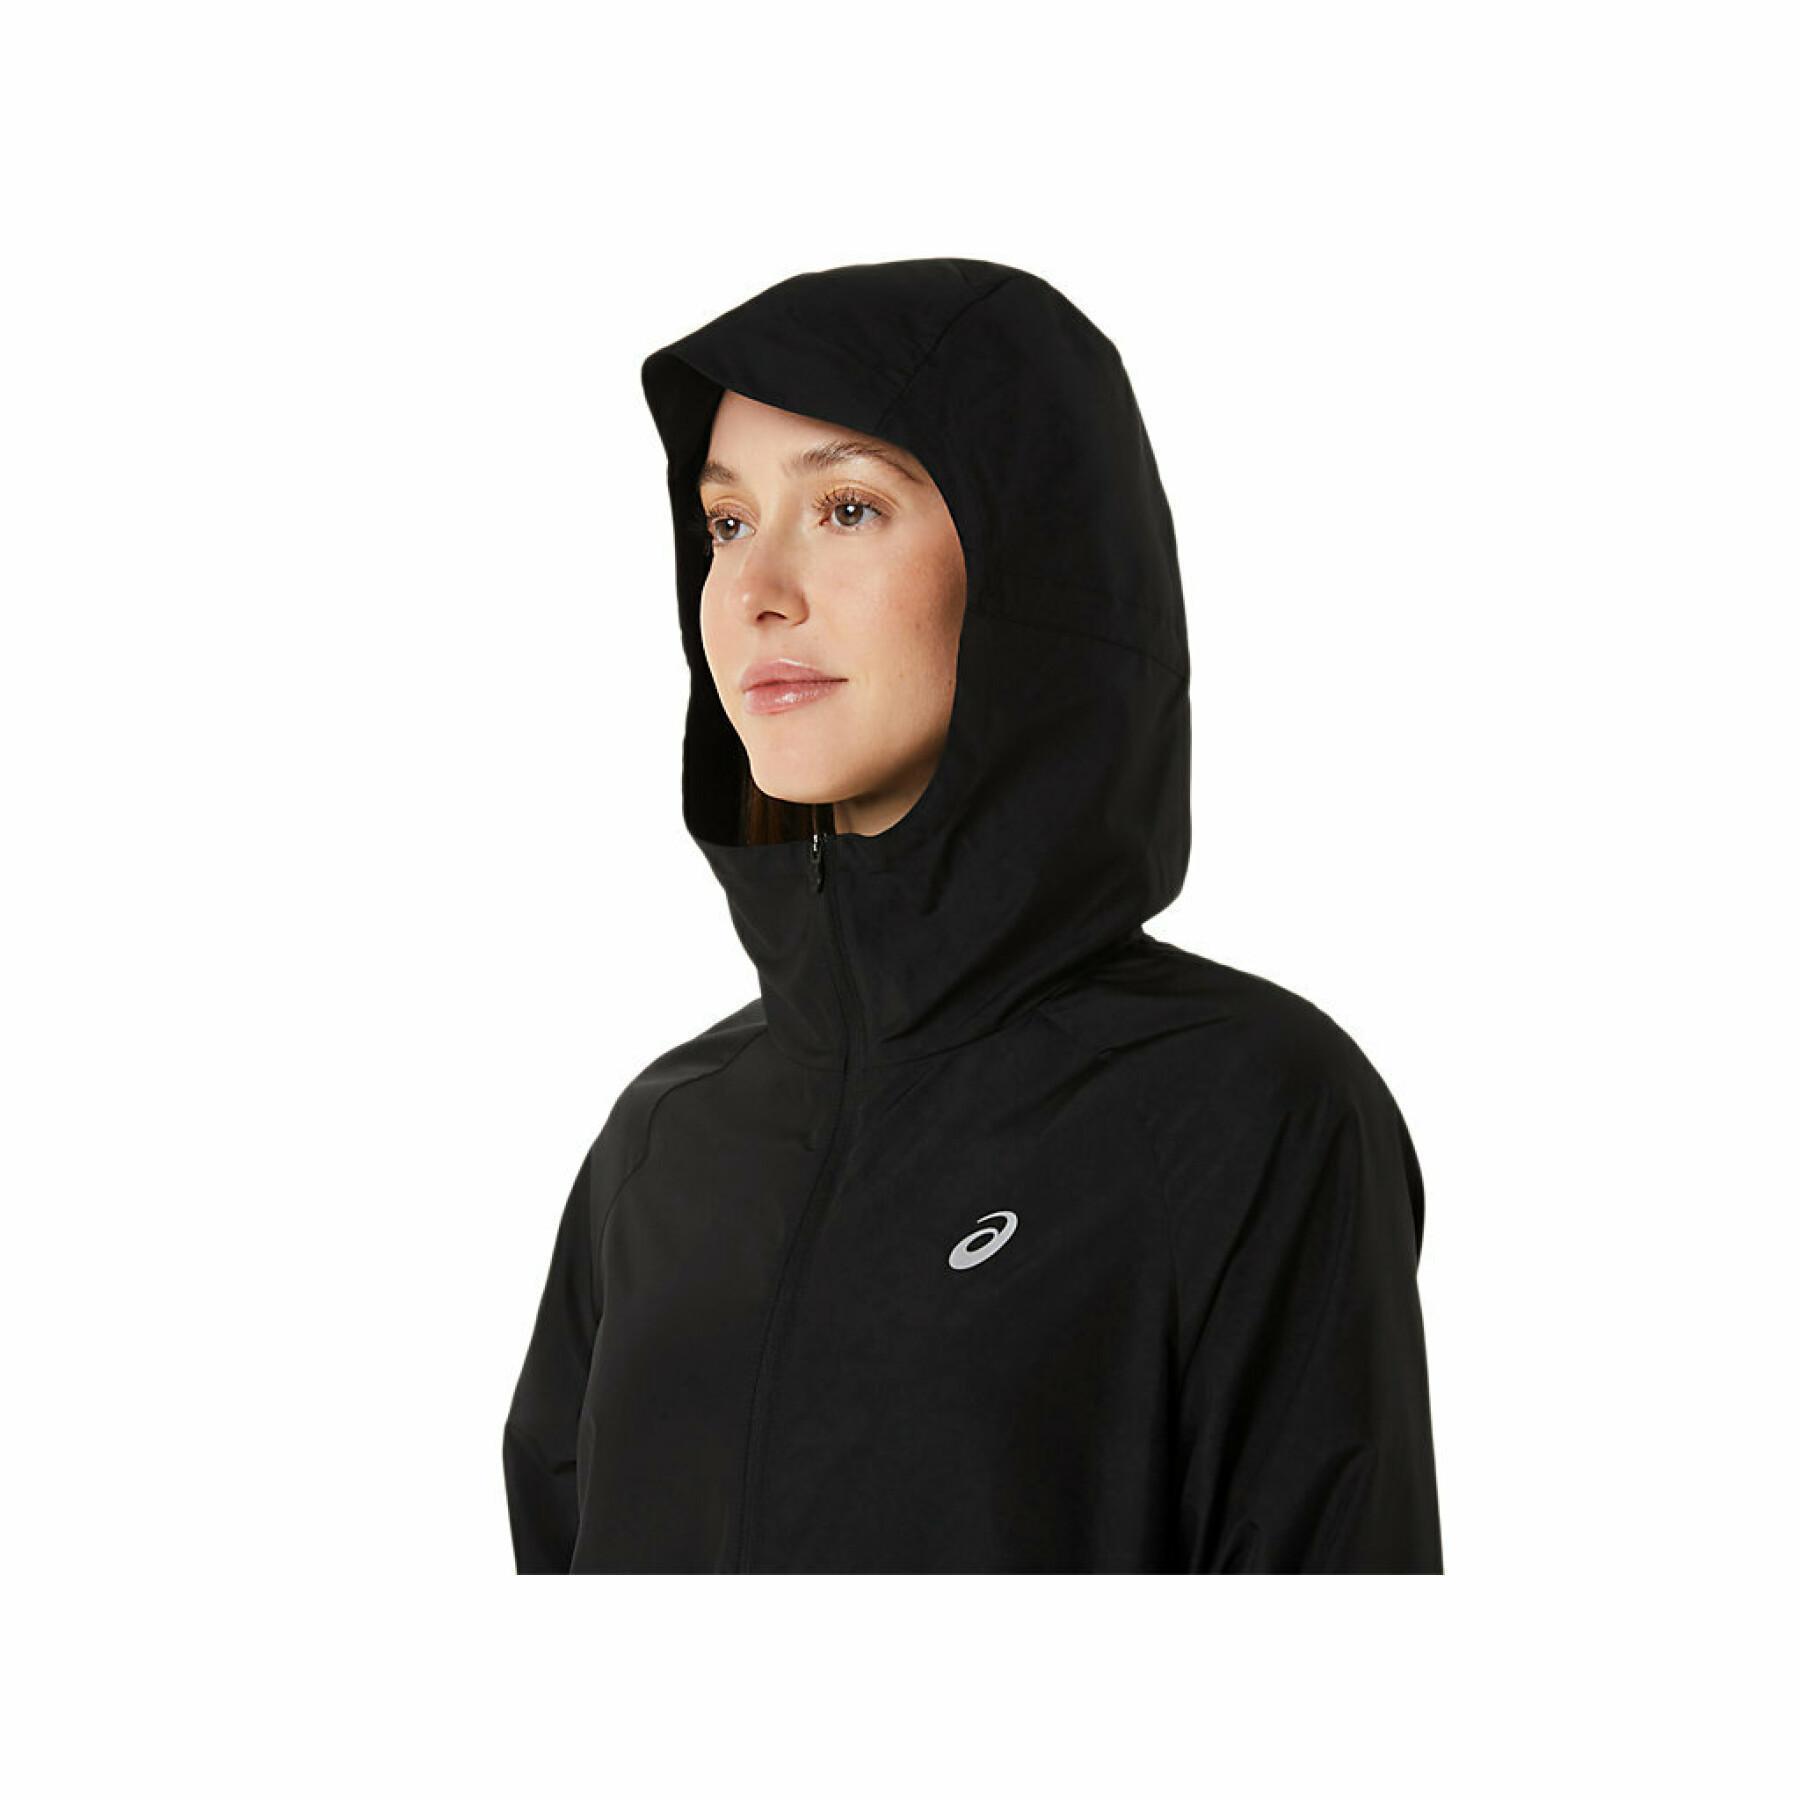 Women's hooded jacket Asics Run